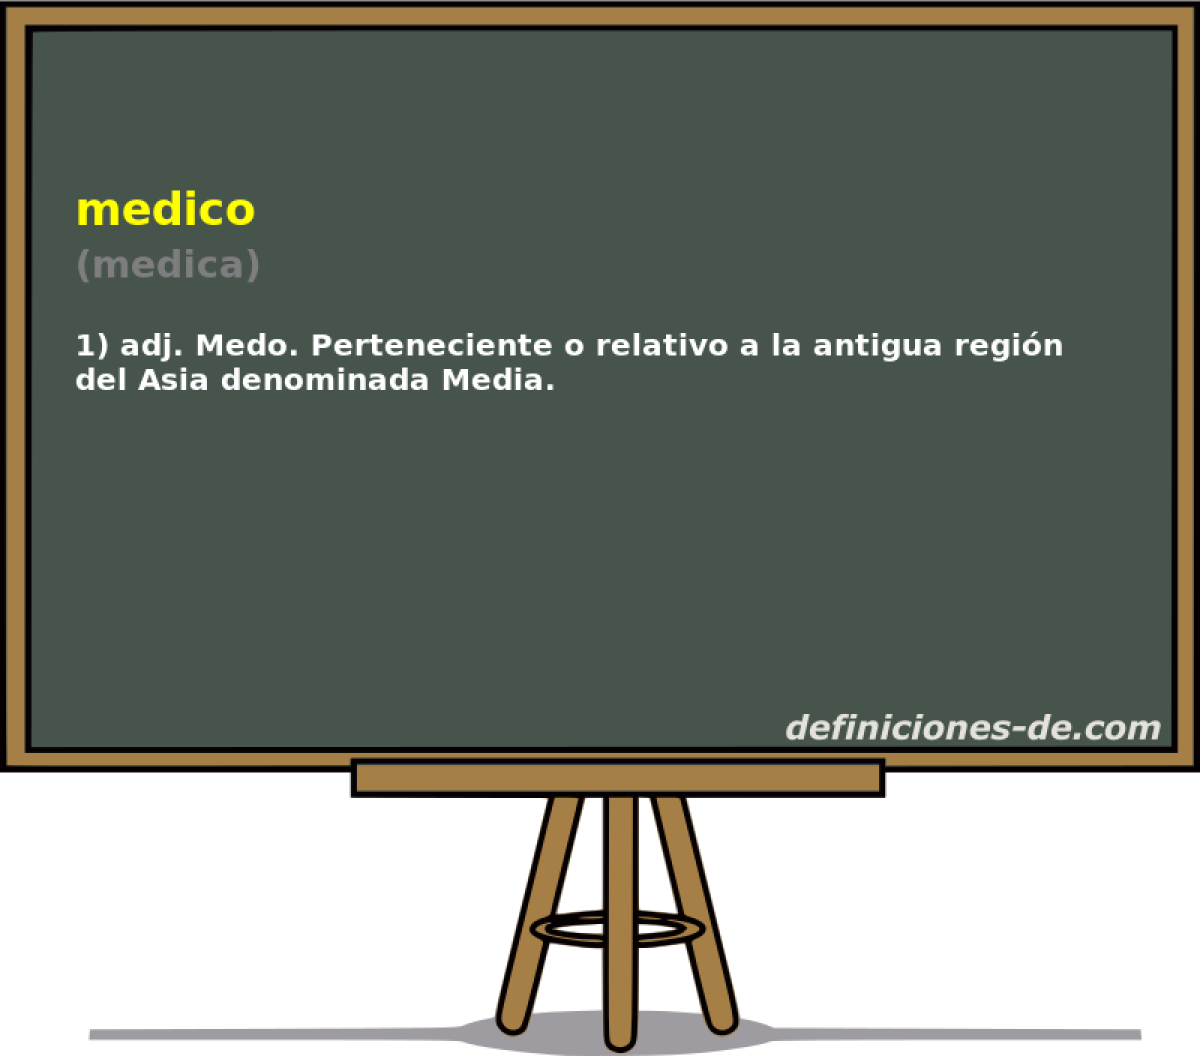 medico (medica)